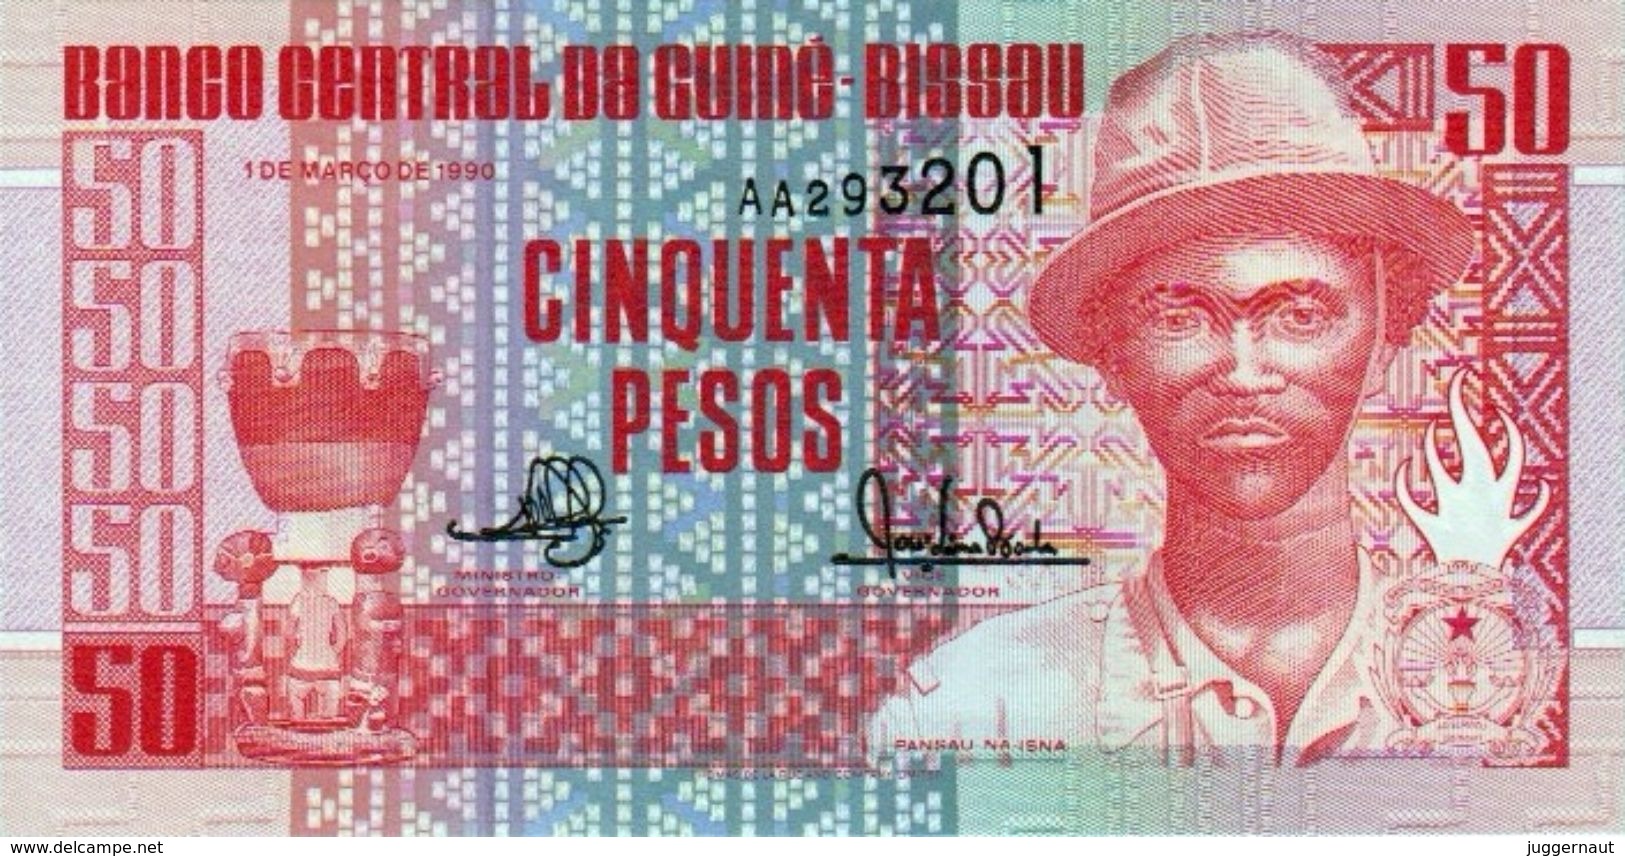 GUINEA-BISSAU 50 PESOS BANKNOTE 1990 AD PICK NO.10 UNCIRCULATED UNC - Guinea-Bissau